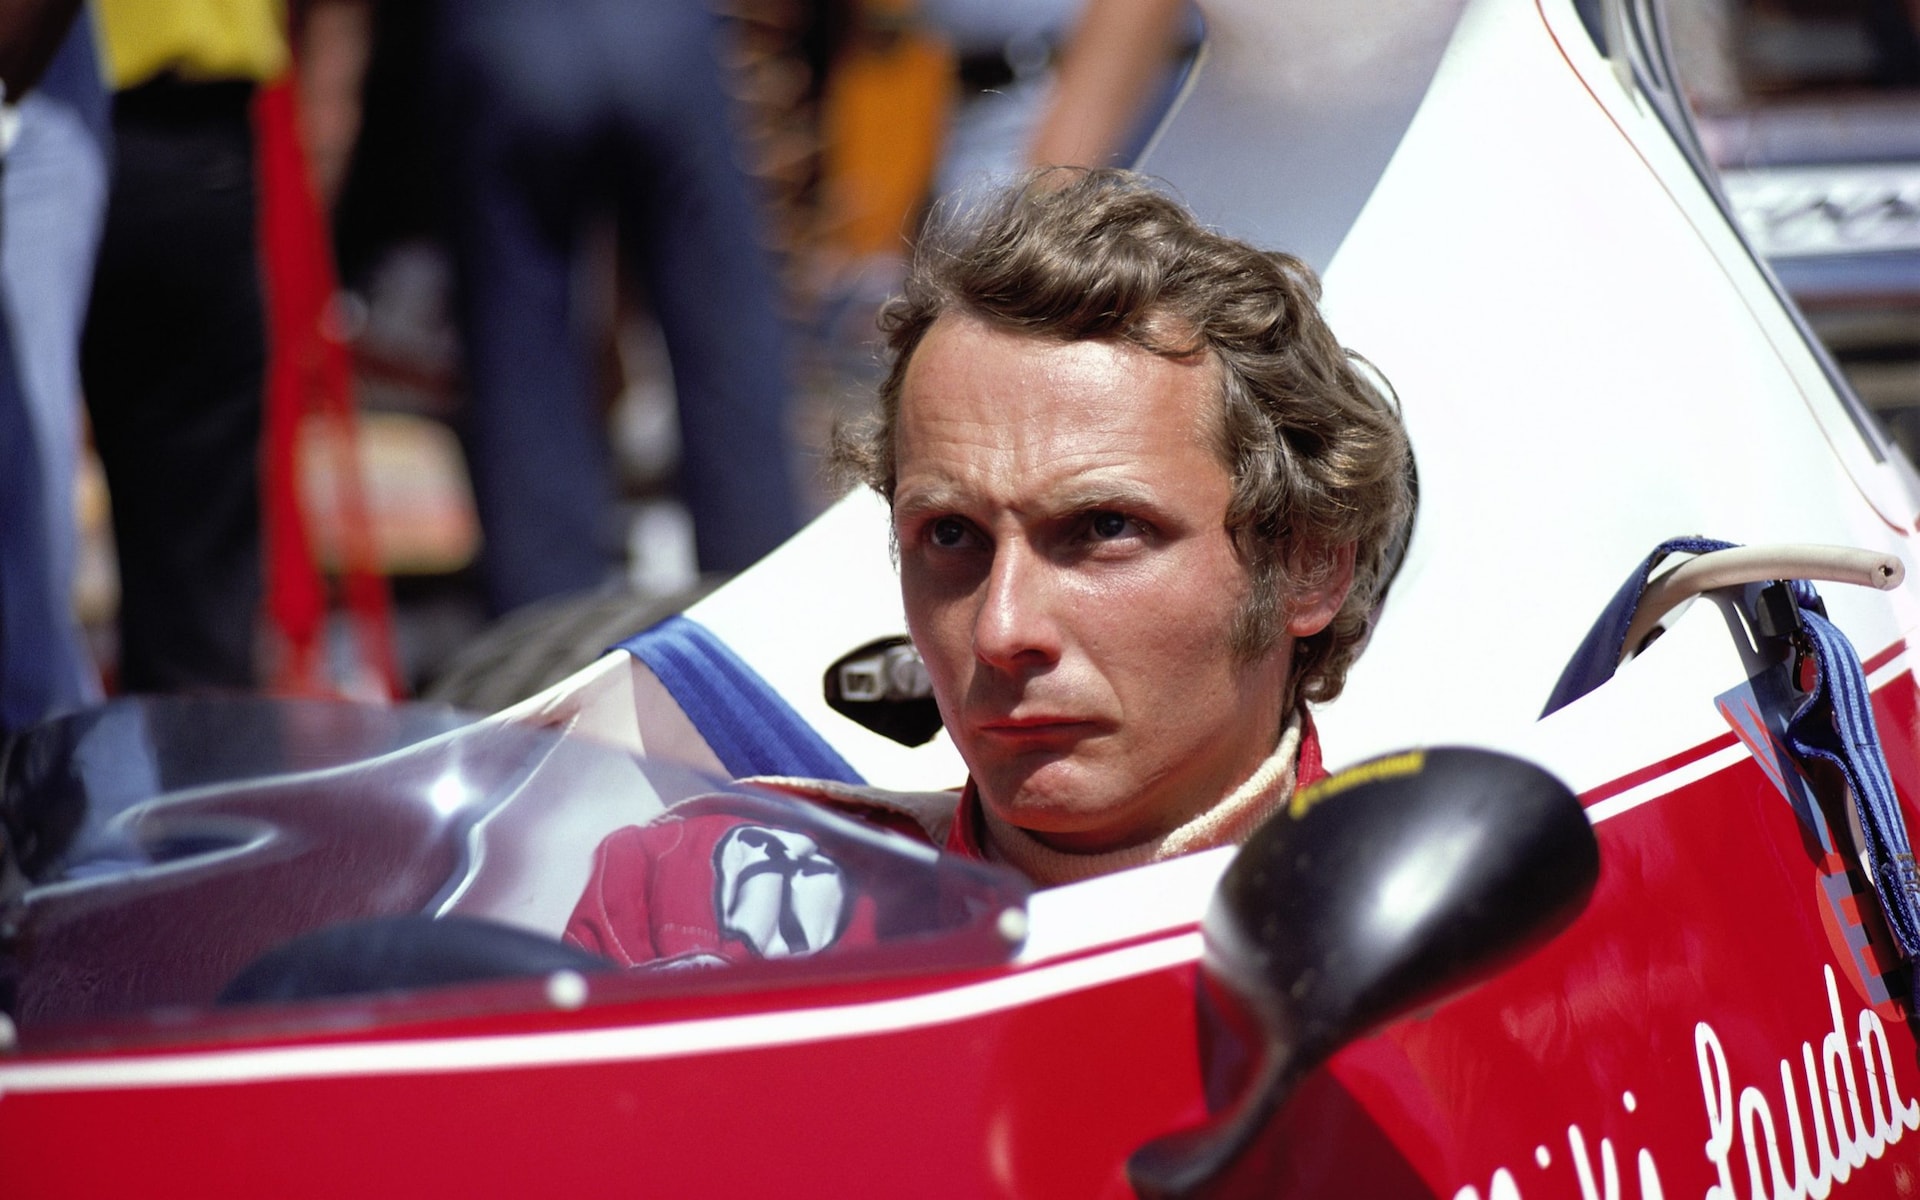 Niki Lauda a bordo della sua Ferrari nel 1975. Foto: Rainer W Schlegelmilch/Getty Images.